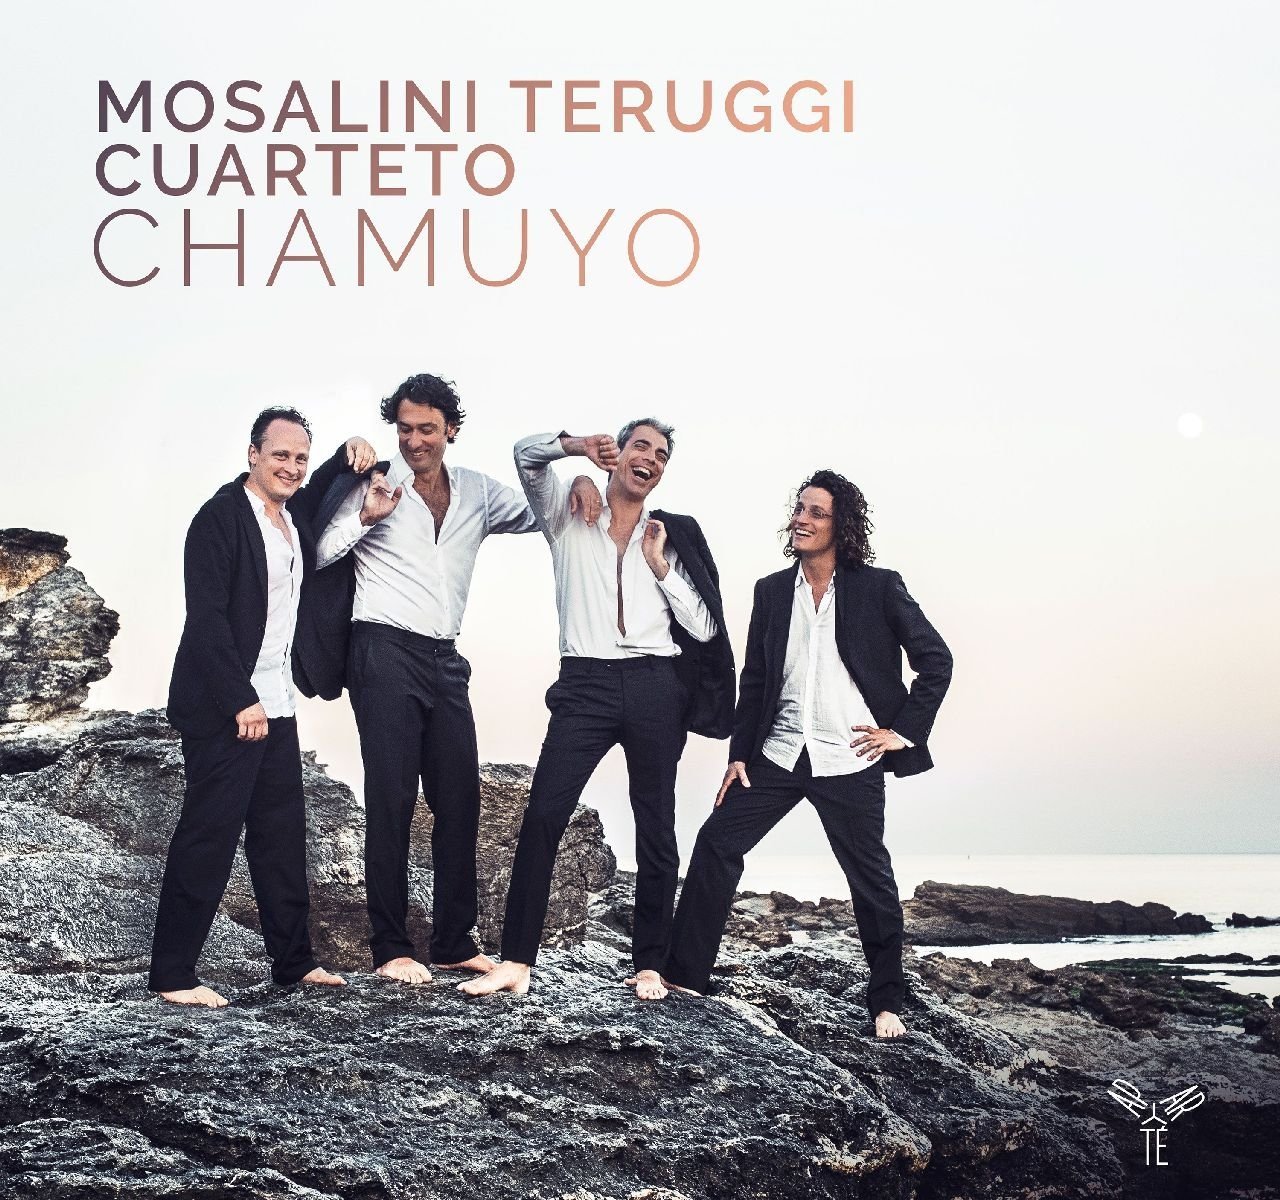 Mosalini Teruggi Cuarteto - Chamuyo (2017) [Qobuz FLAC 24bit/96kHz]